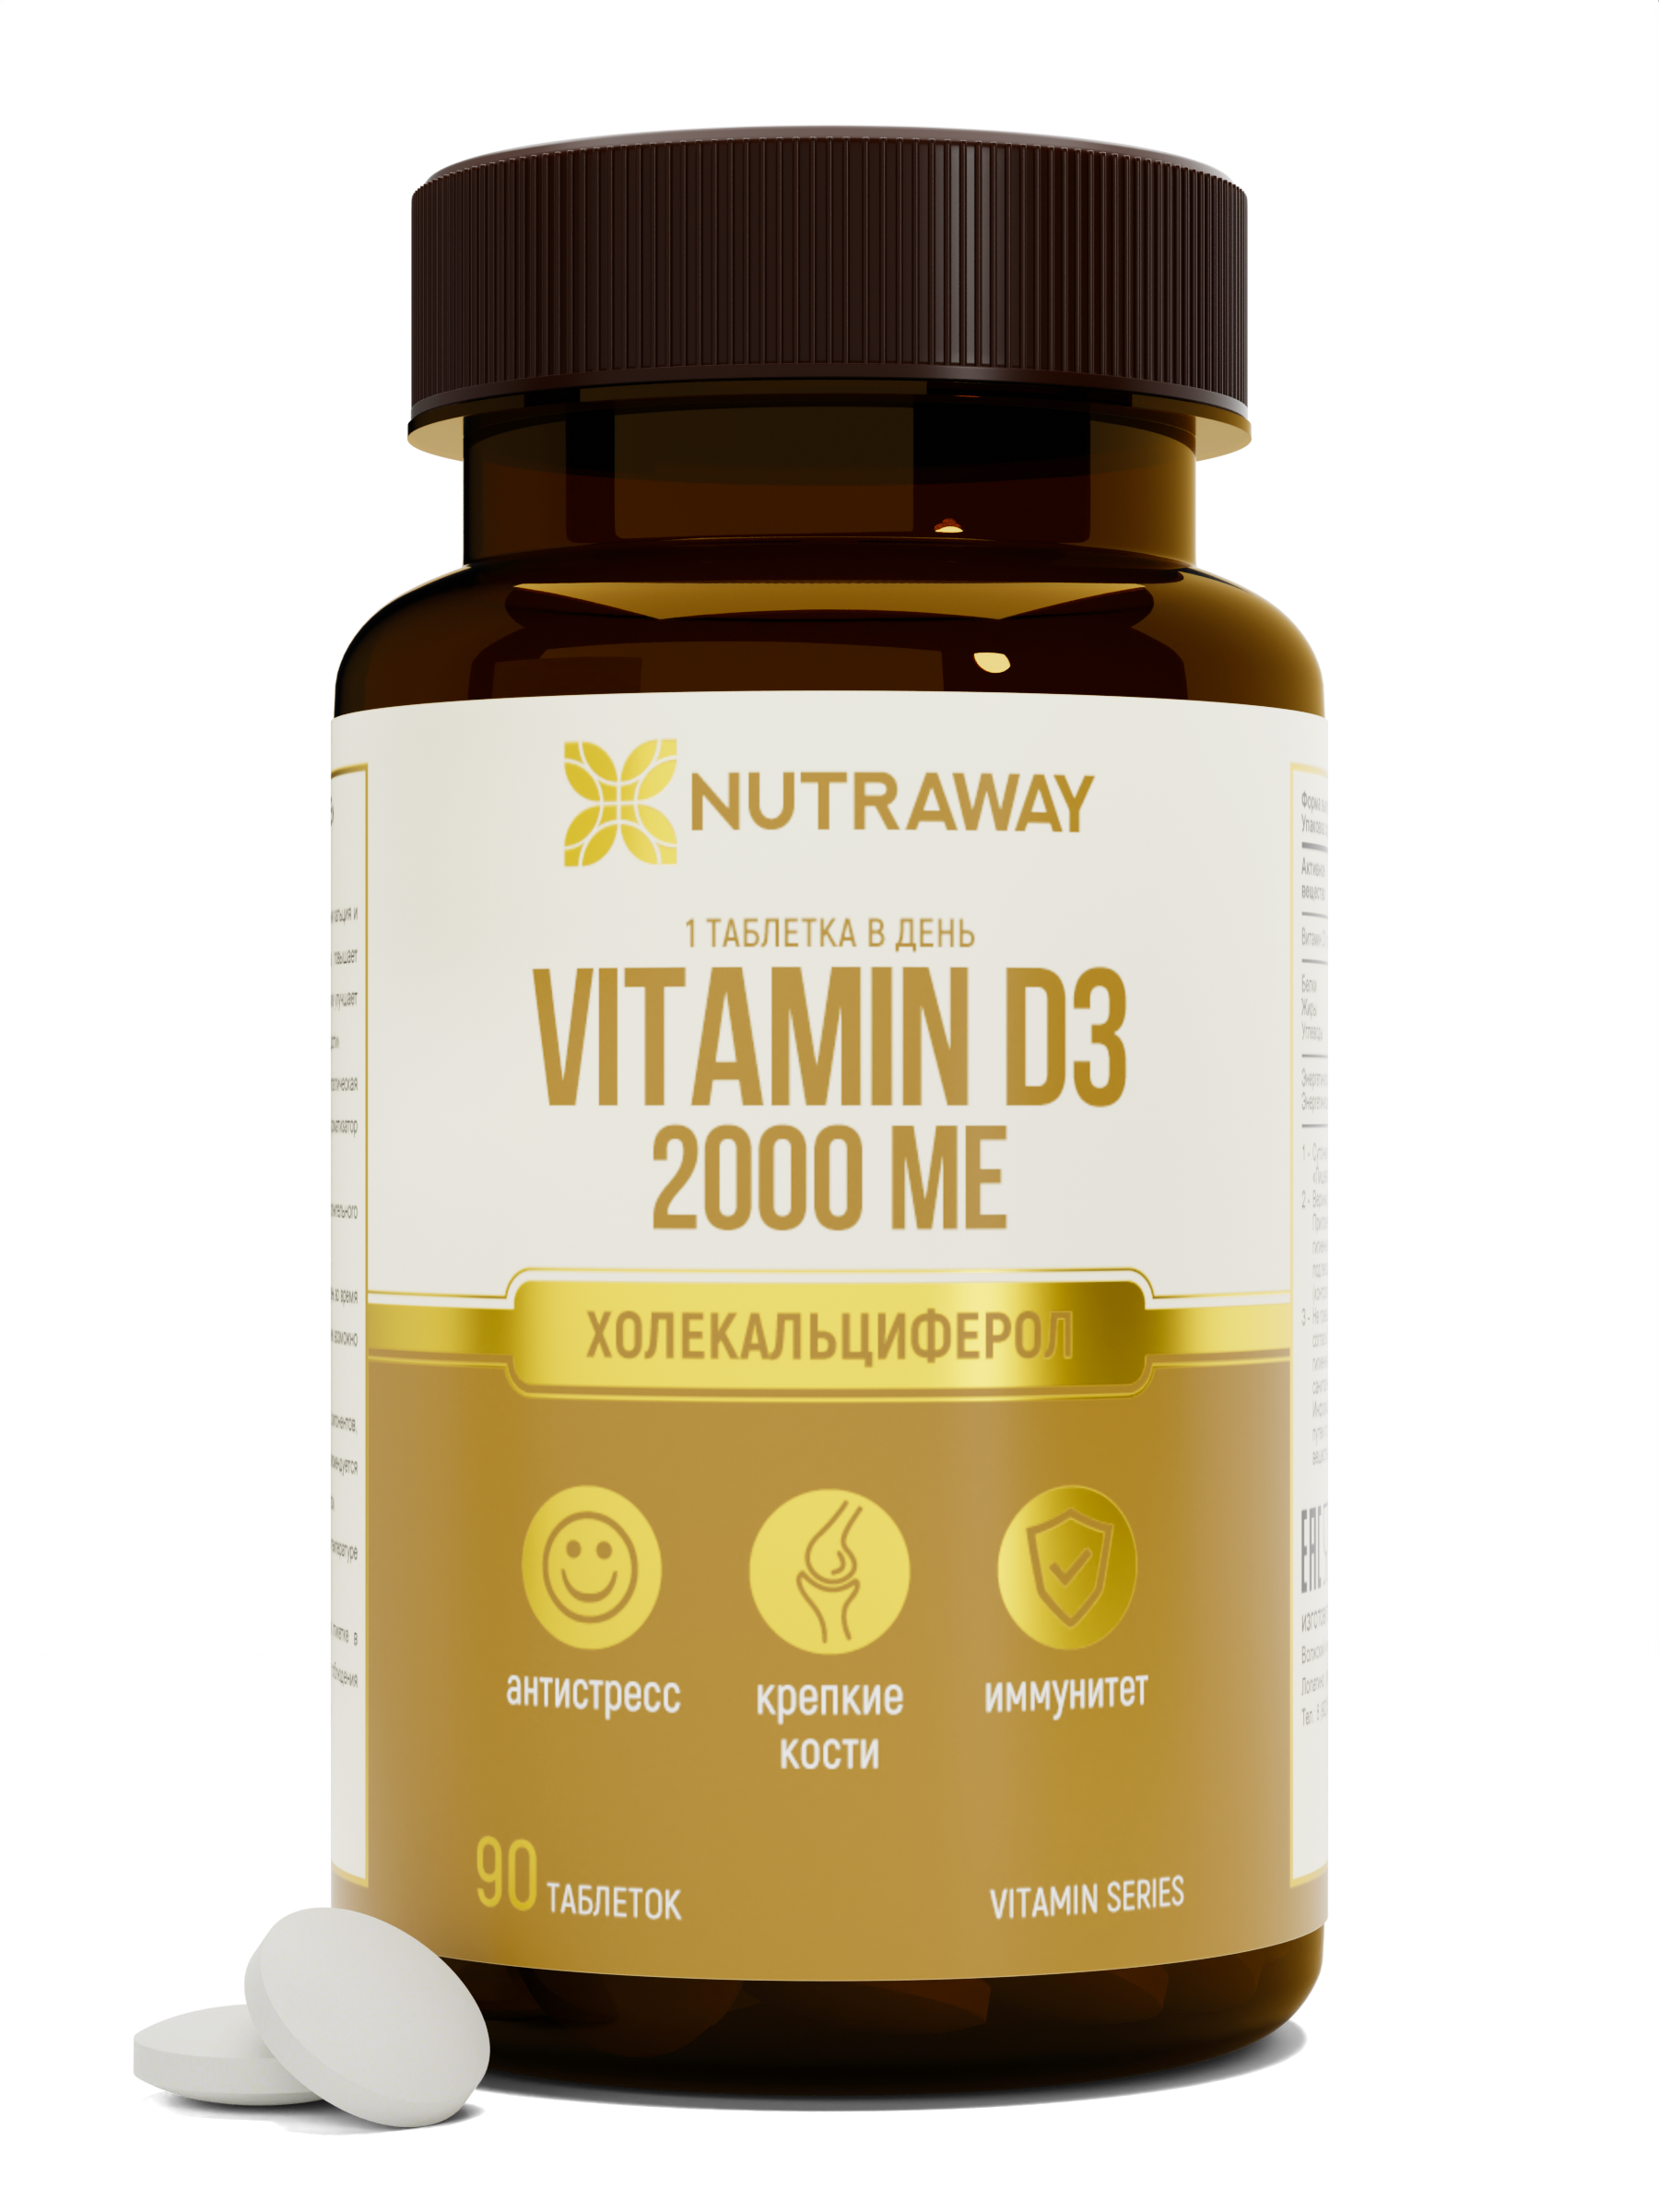 Купить Витамин Д3 NUTRAWAY Vitamin D3 таблетки 2000 ME 90 шт.